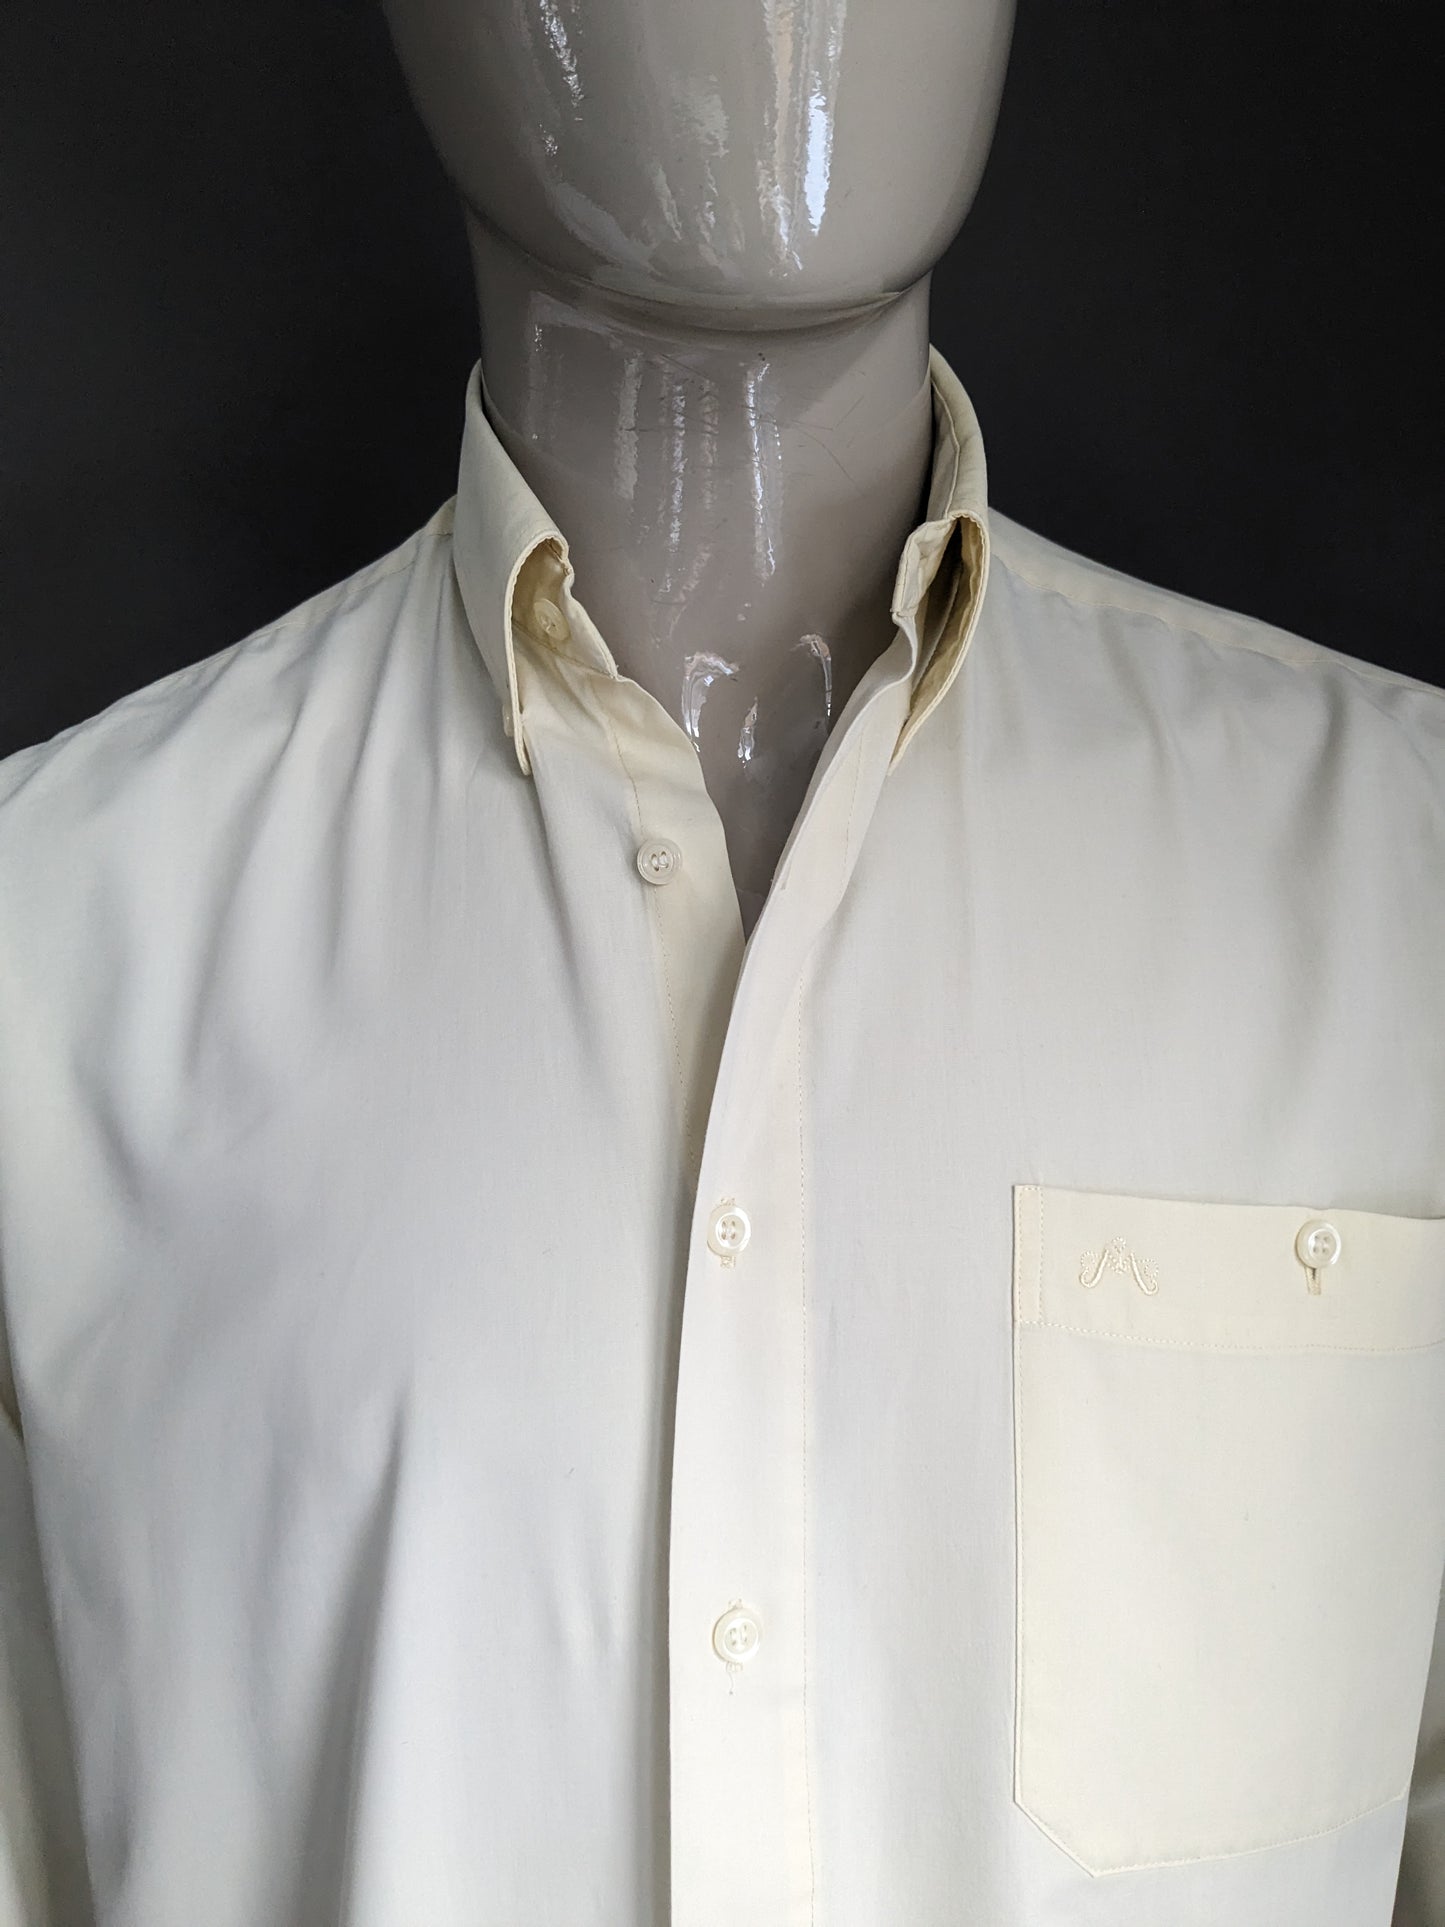 Vintage 70's Marcello overhemd met puntkraag. Licht Geel gekleurd. Maat XL.